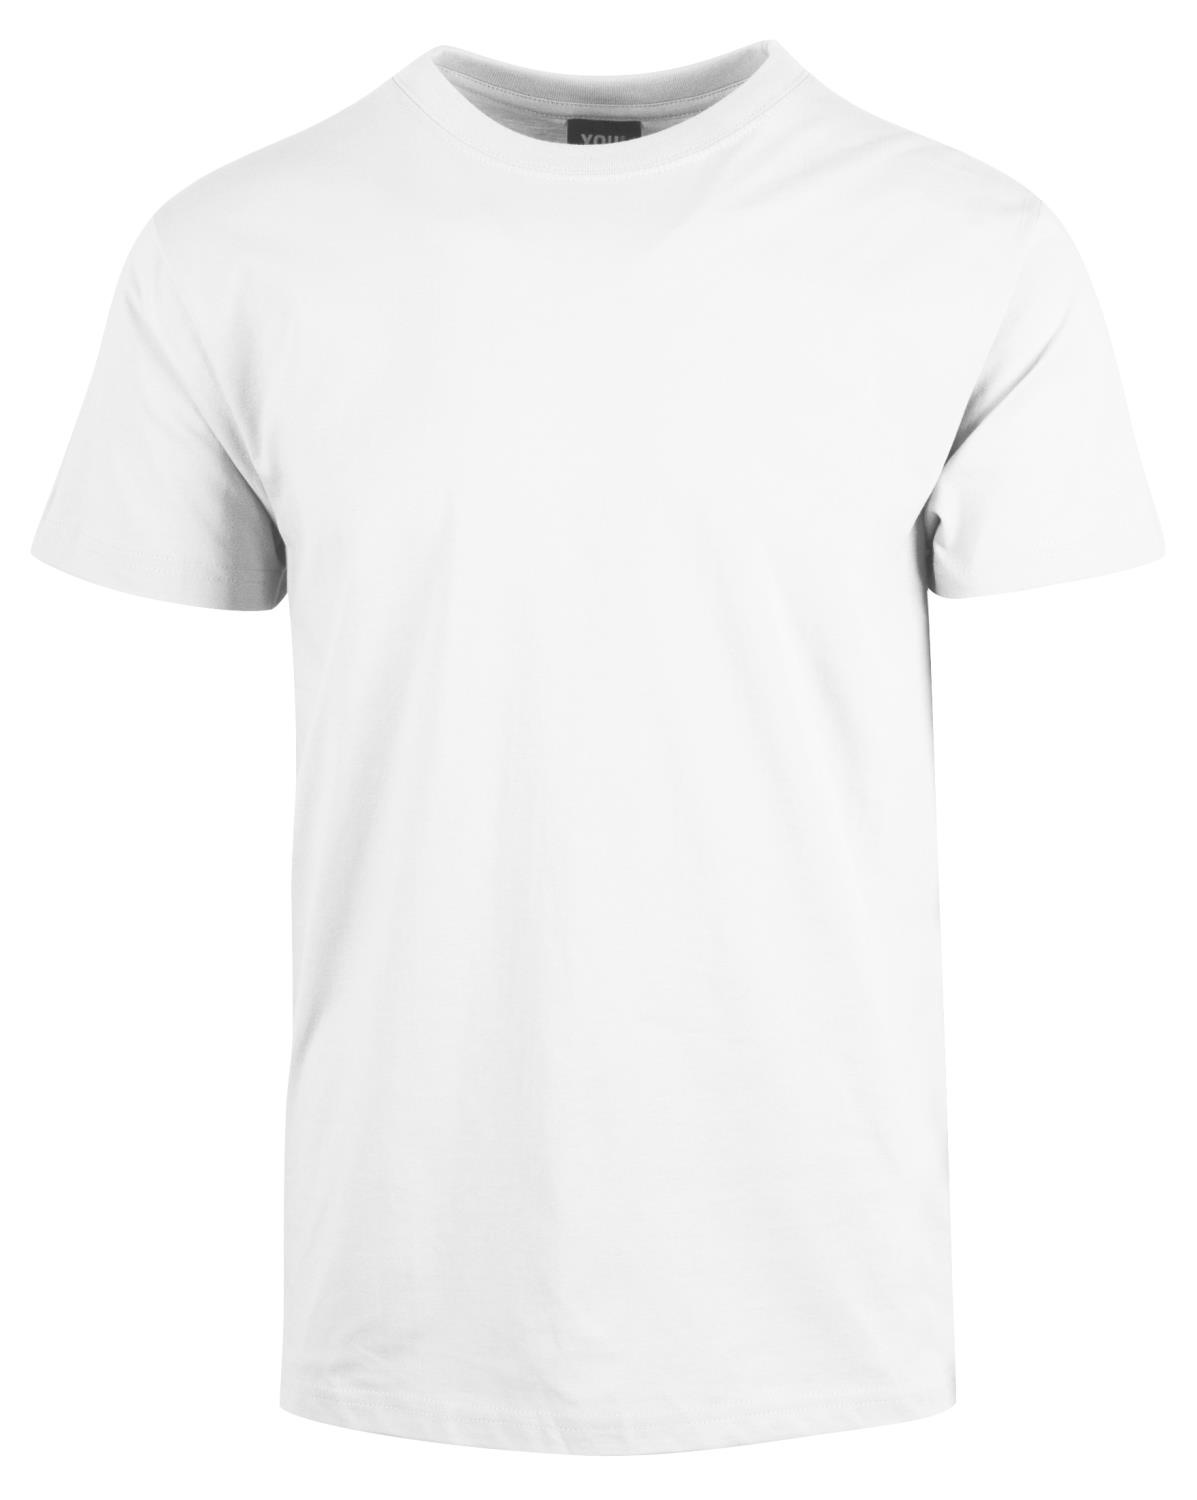 T-skjorte Hvit